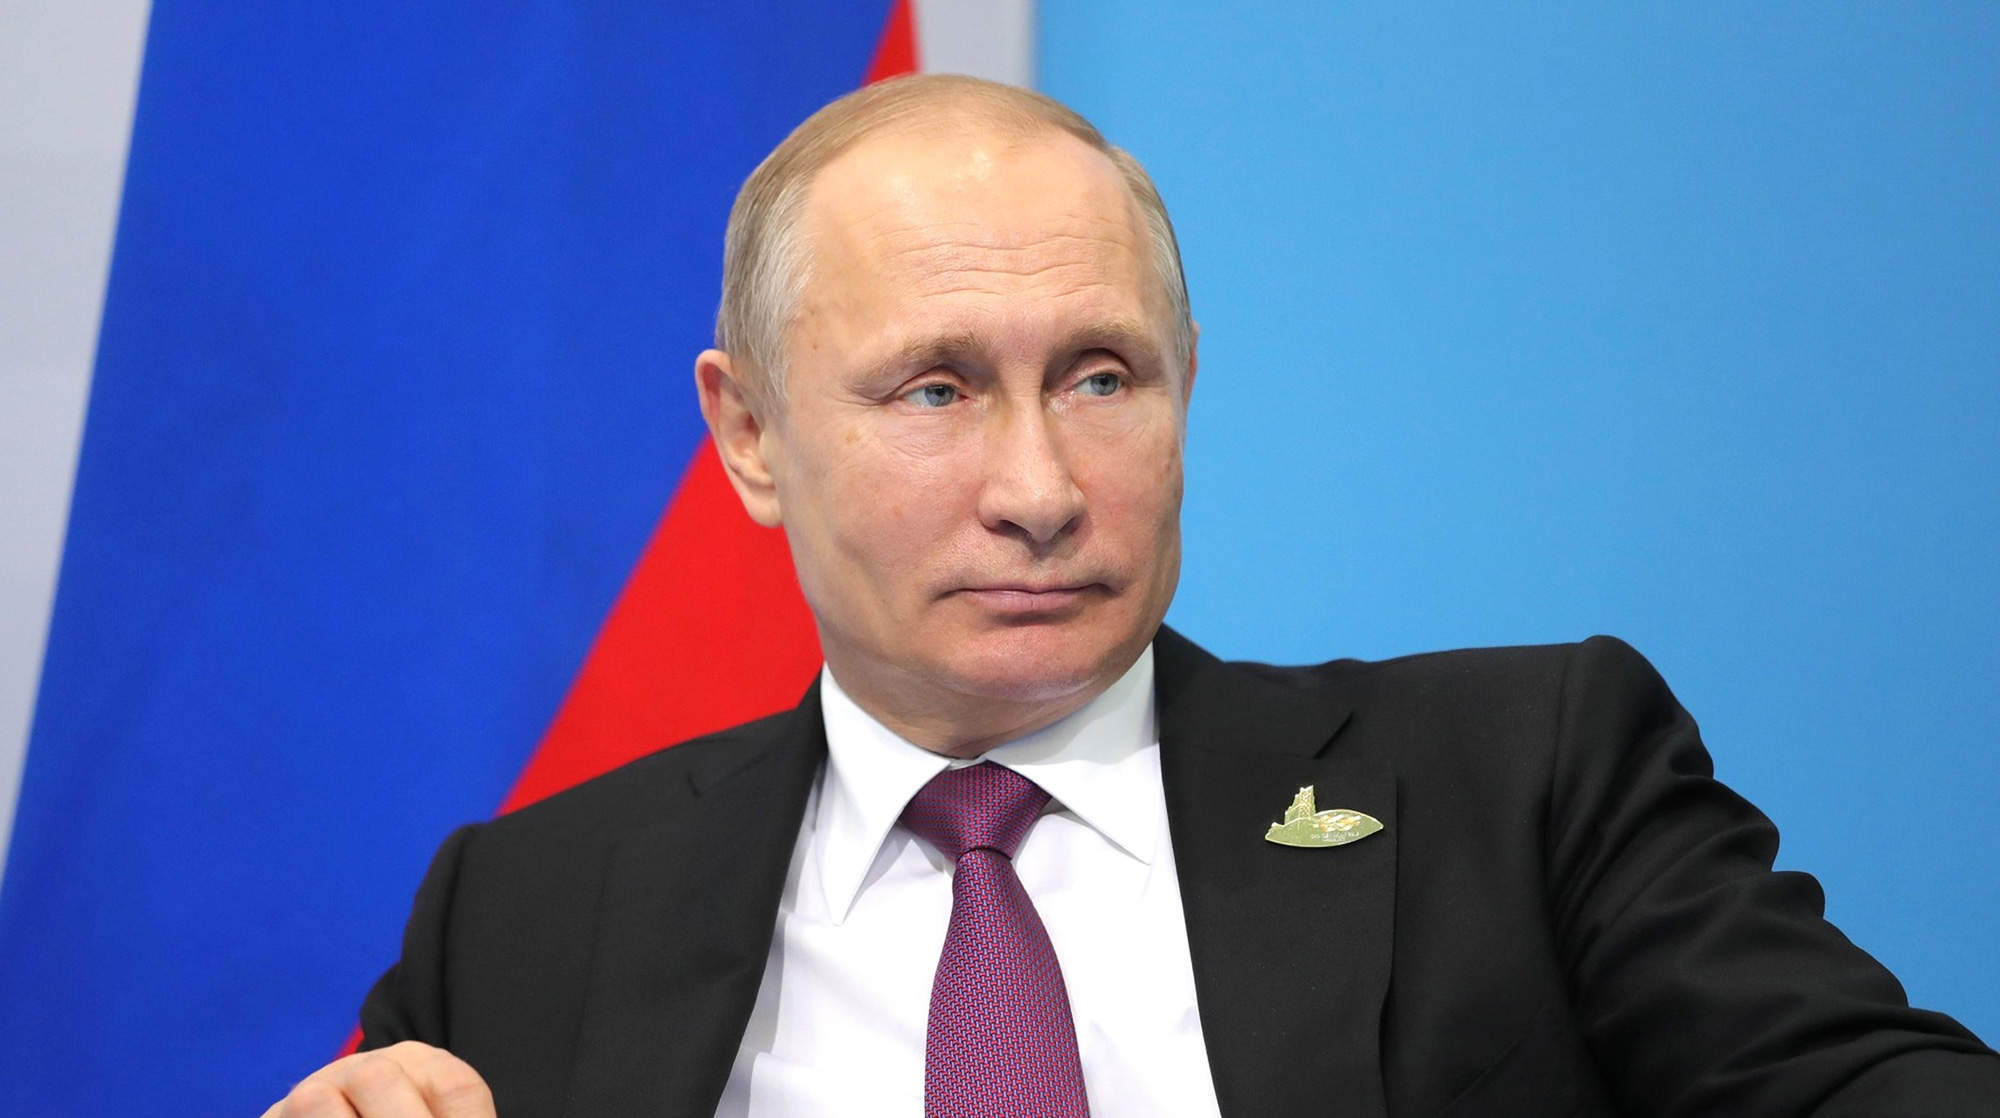 Президент планирует посетить регионы, где осенью будут выборы. Кремль не уверен в абсолютной победе кандидатов от власти undefined